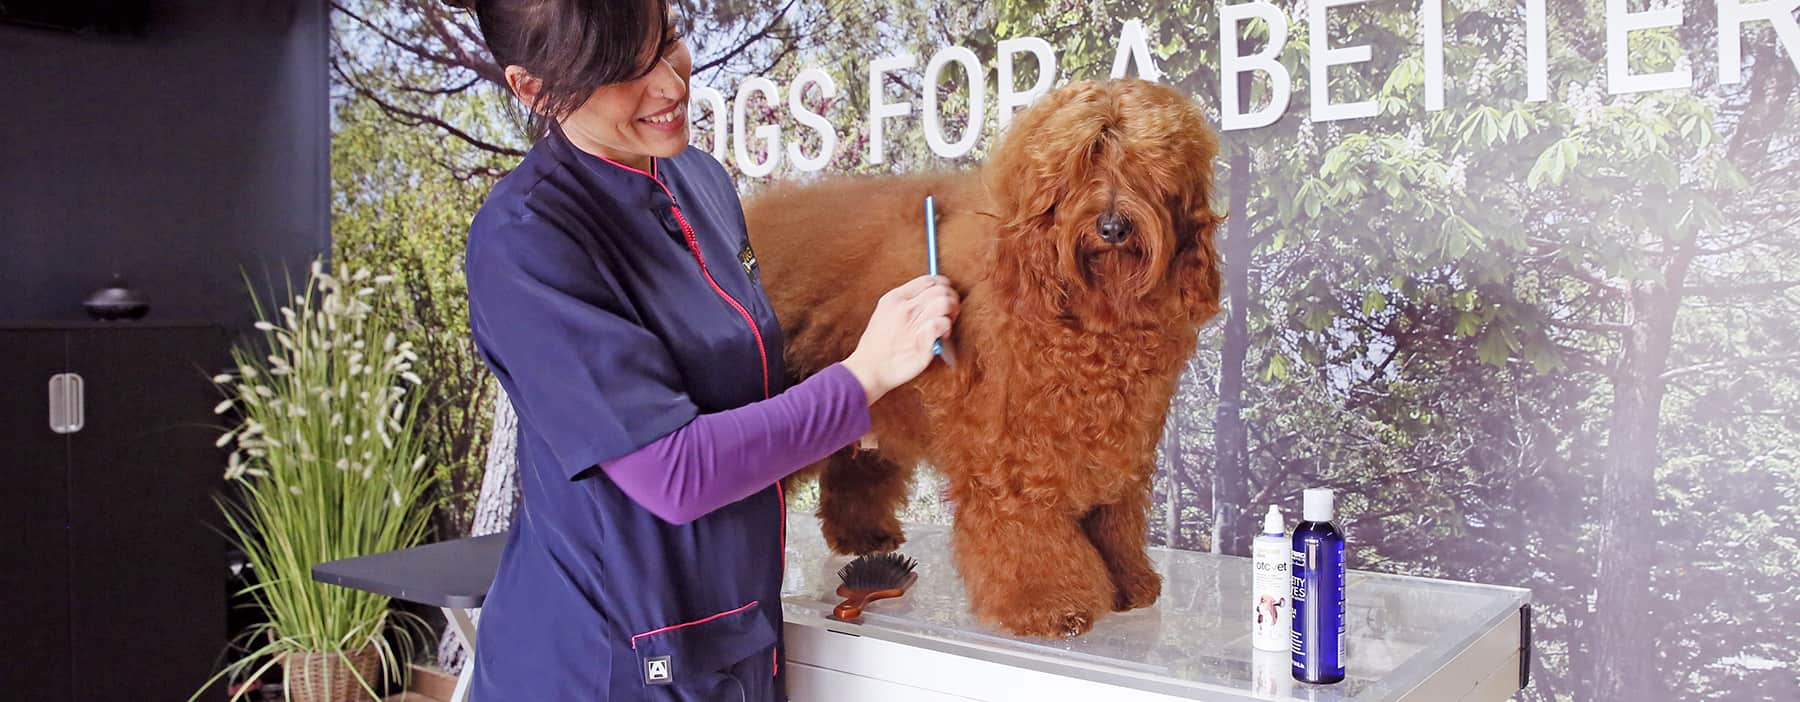 peluquera canina peinando a un perro